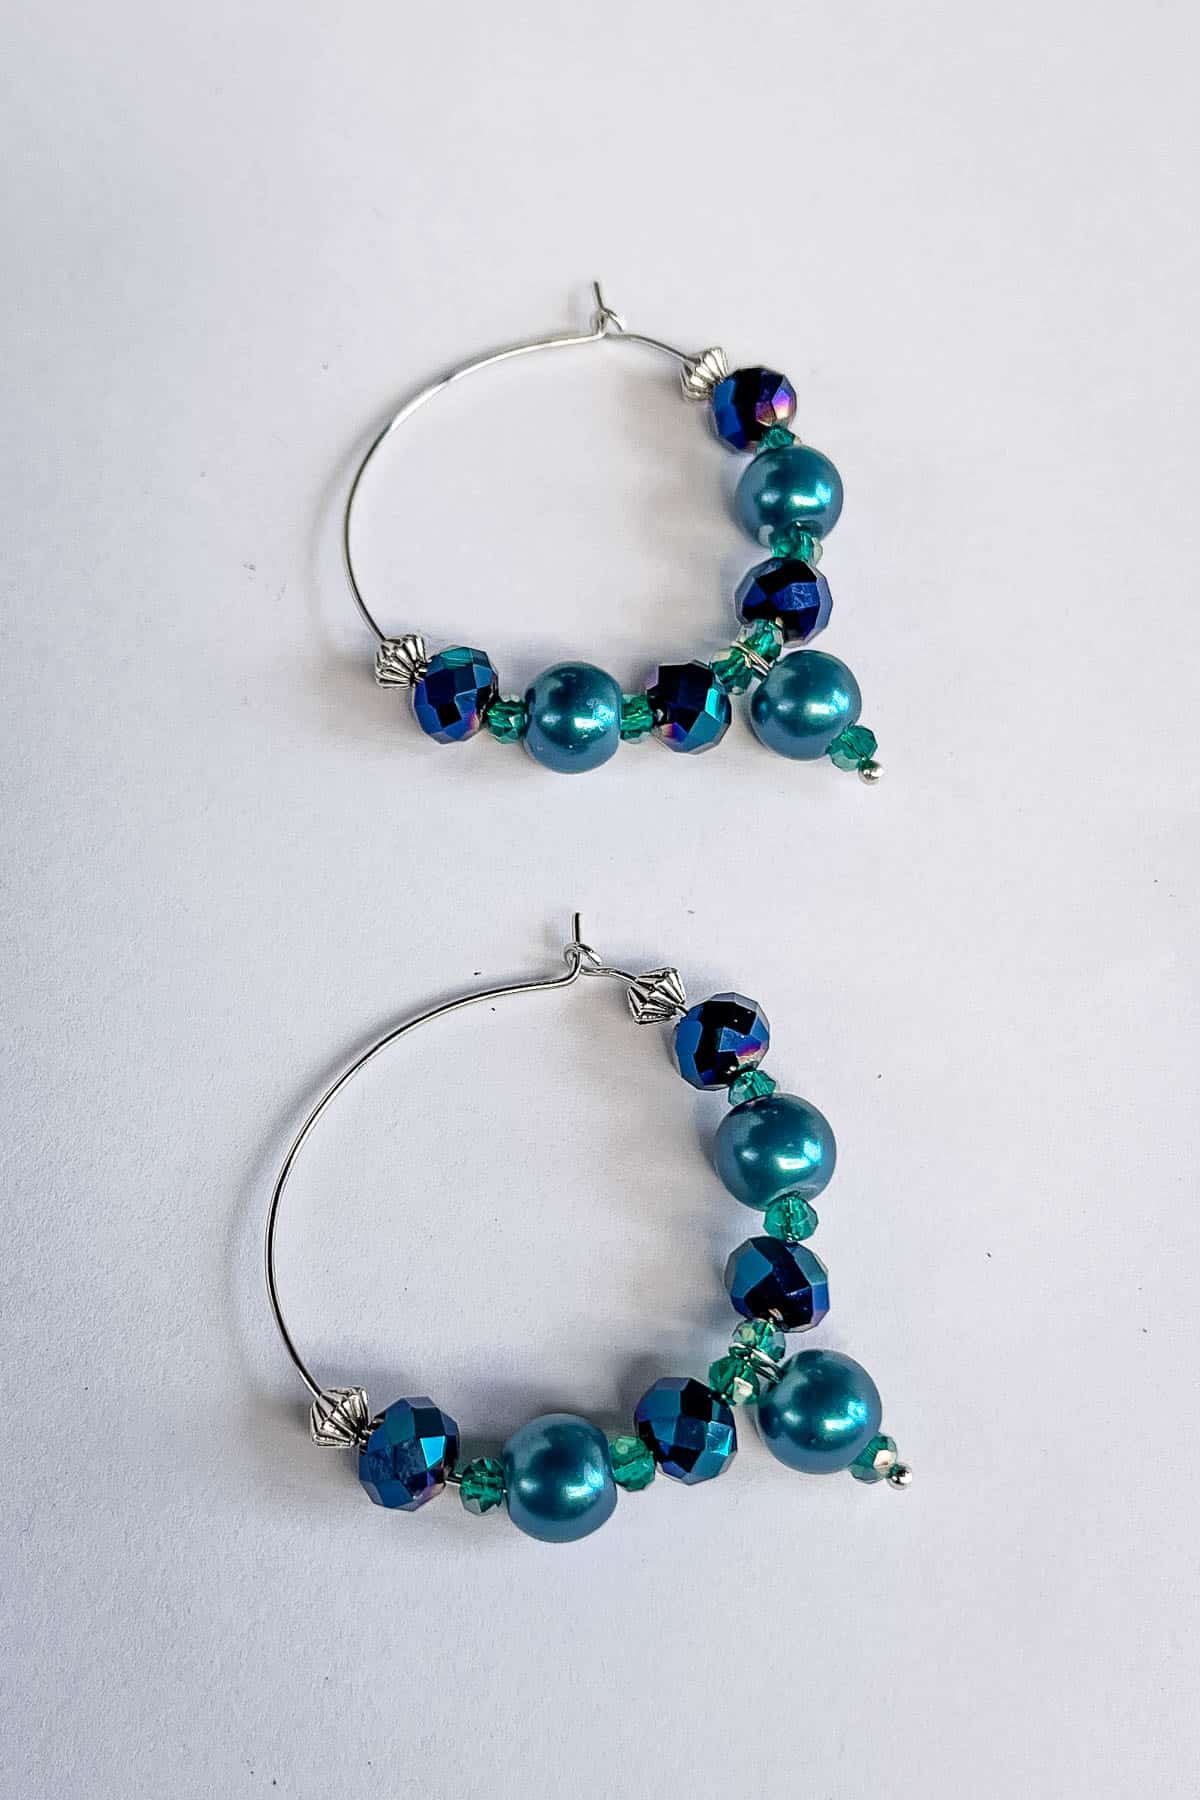 An elegant pair of beaded hoop earrings in blue crystal and pearl beads and silver metal hoops.